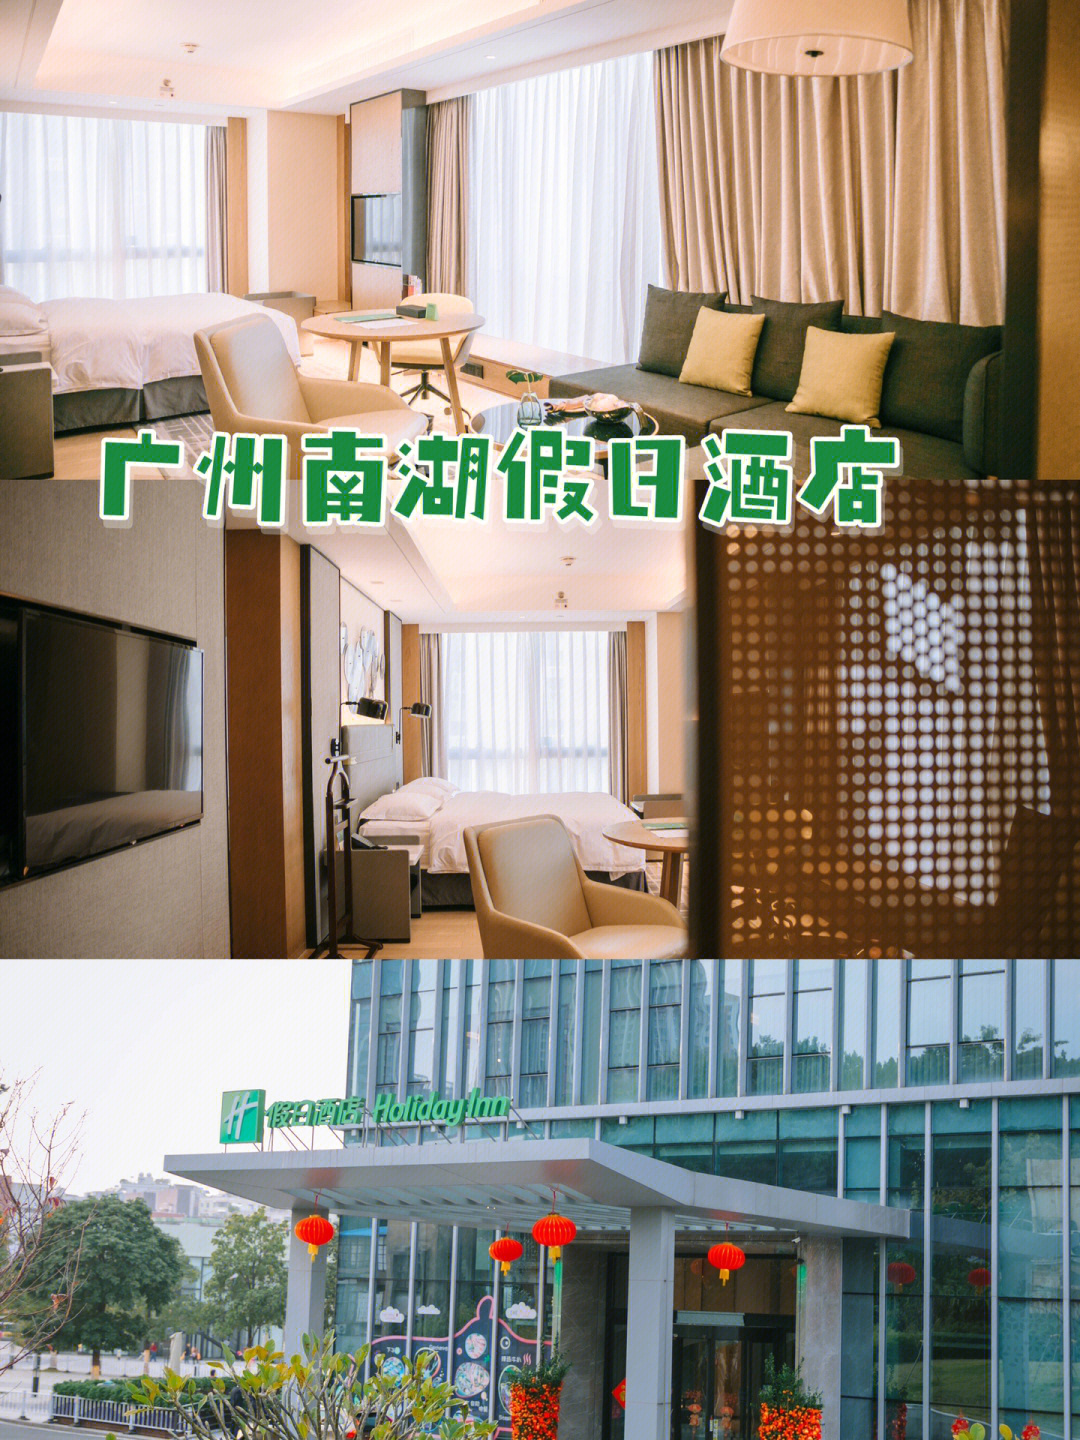 7815在广州白云山风景区附近新开了一家holidayinn假日酒店,就在